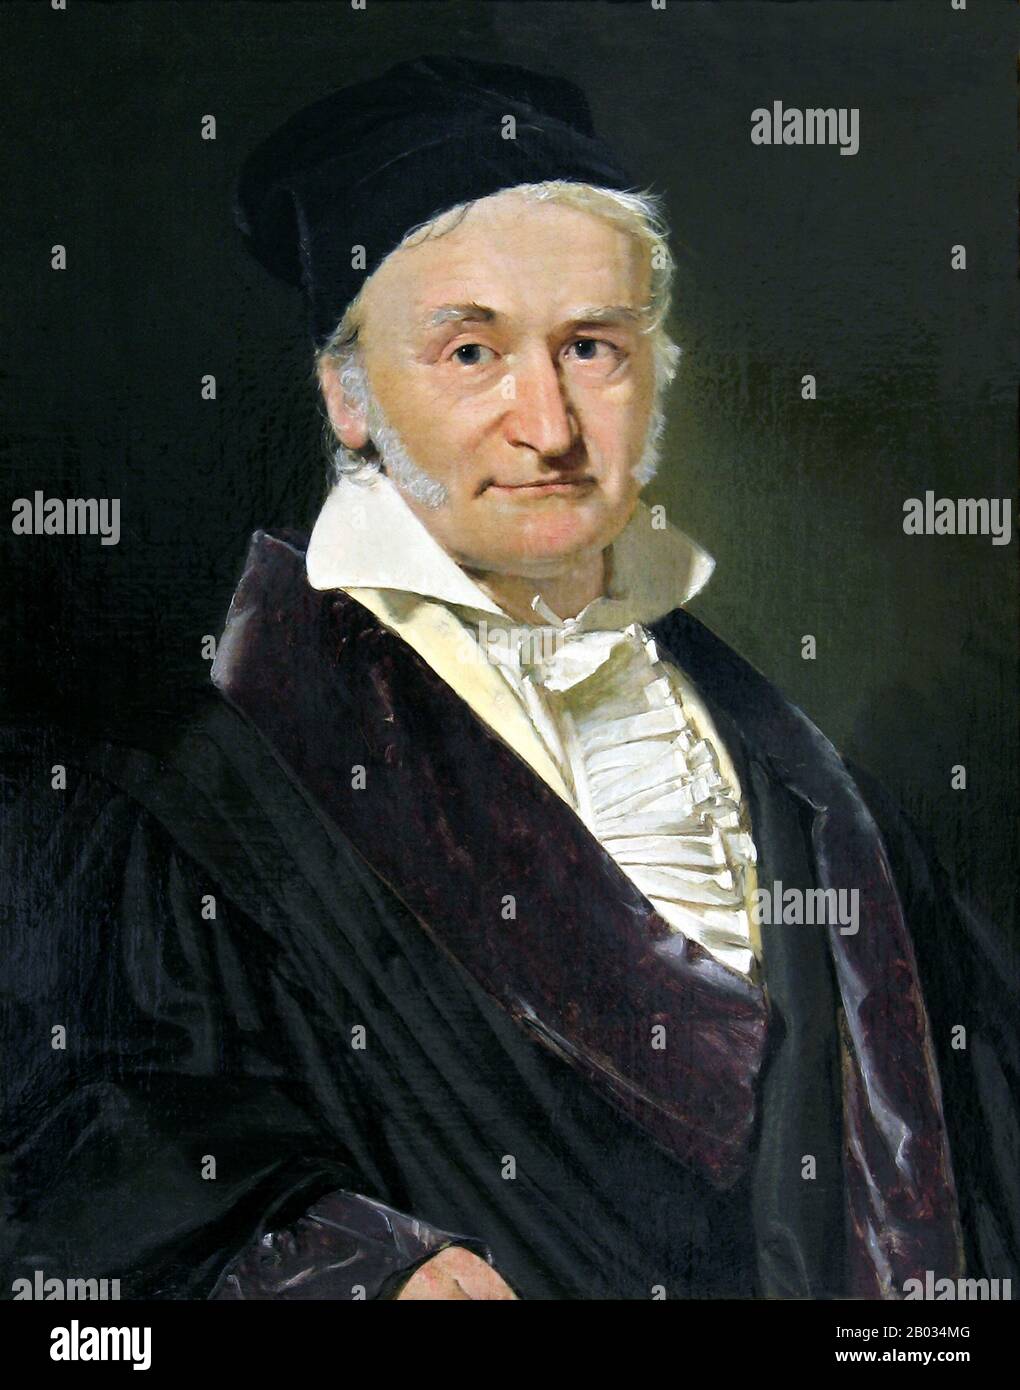 Johann Carl Friedrich Gauss (dal 30 aprile 1777 al 23 febbraio 1855) è stato un matematico tedesco che ha contribuito in modo significativo a molti campi, tra cui la teoria dei numeri, l'algebra, le statistiche, l'analisi, la geometria differenziale, la geodetica, la geofisica, la meccanica, l'elettrostatica, l'astronomia, la teoria della matrice e l'ottica. A volte definito il matematico principeps (latino, il più grande dei matematici) e il più grande matematico dall'antichità, Gauss ha avuto un'influenza eccezionale in molti campi della matematica e della scienza ed è classificato come uno dei più influenti matematici della storia. Foto Stock